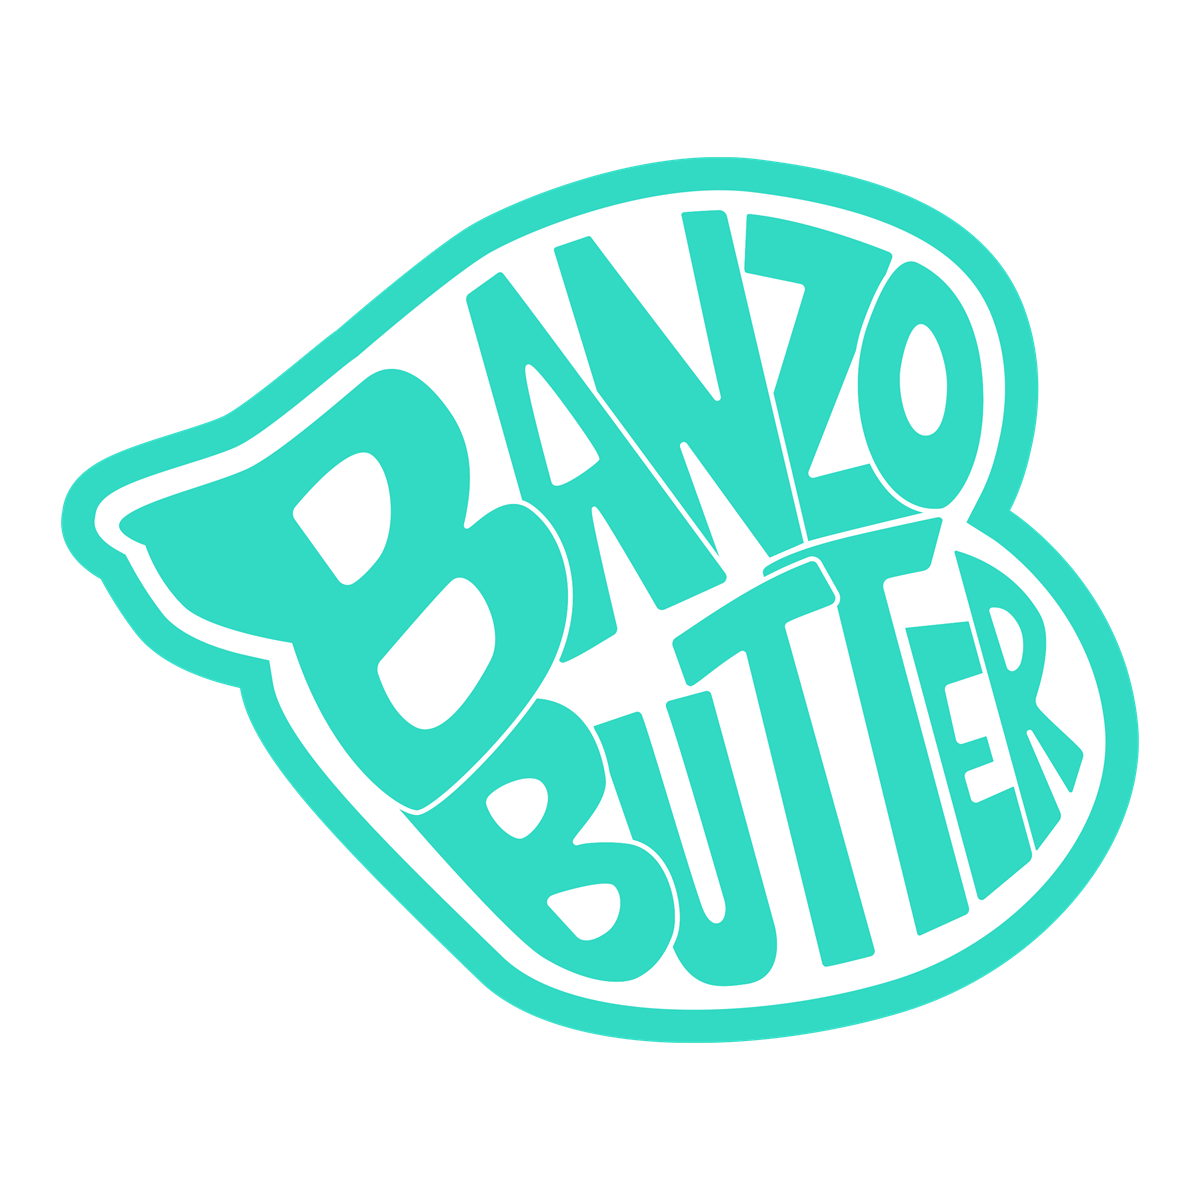 Banzo Butter